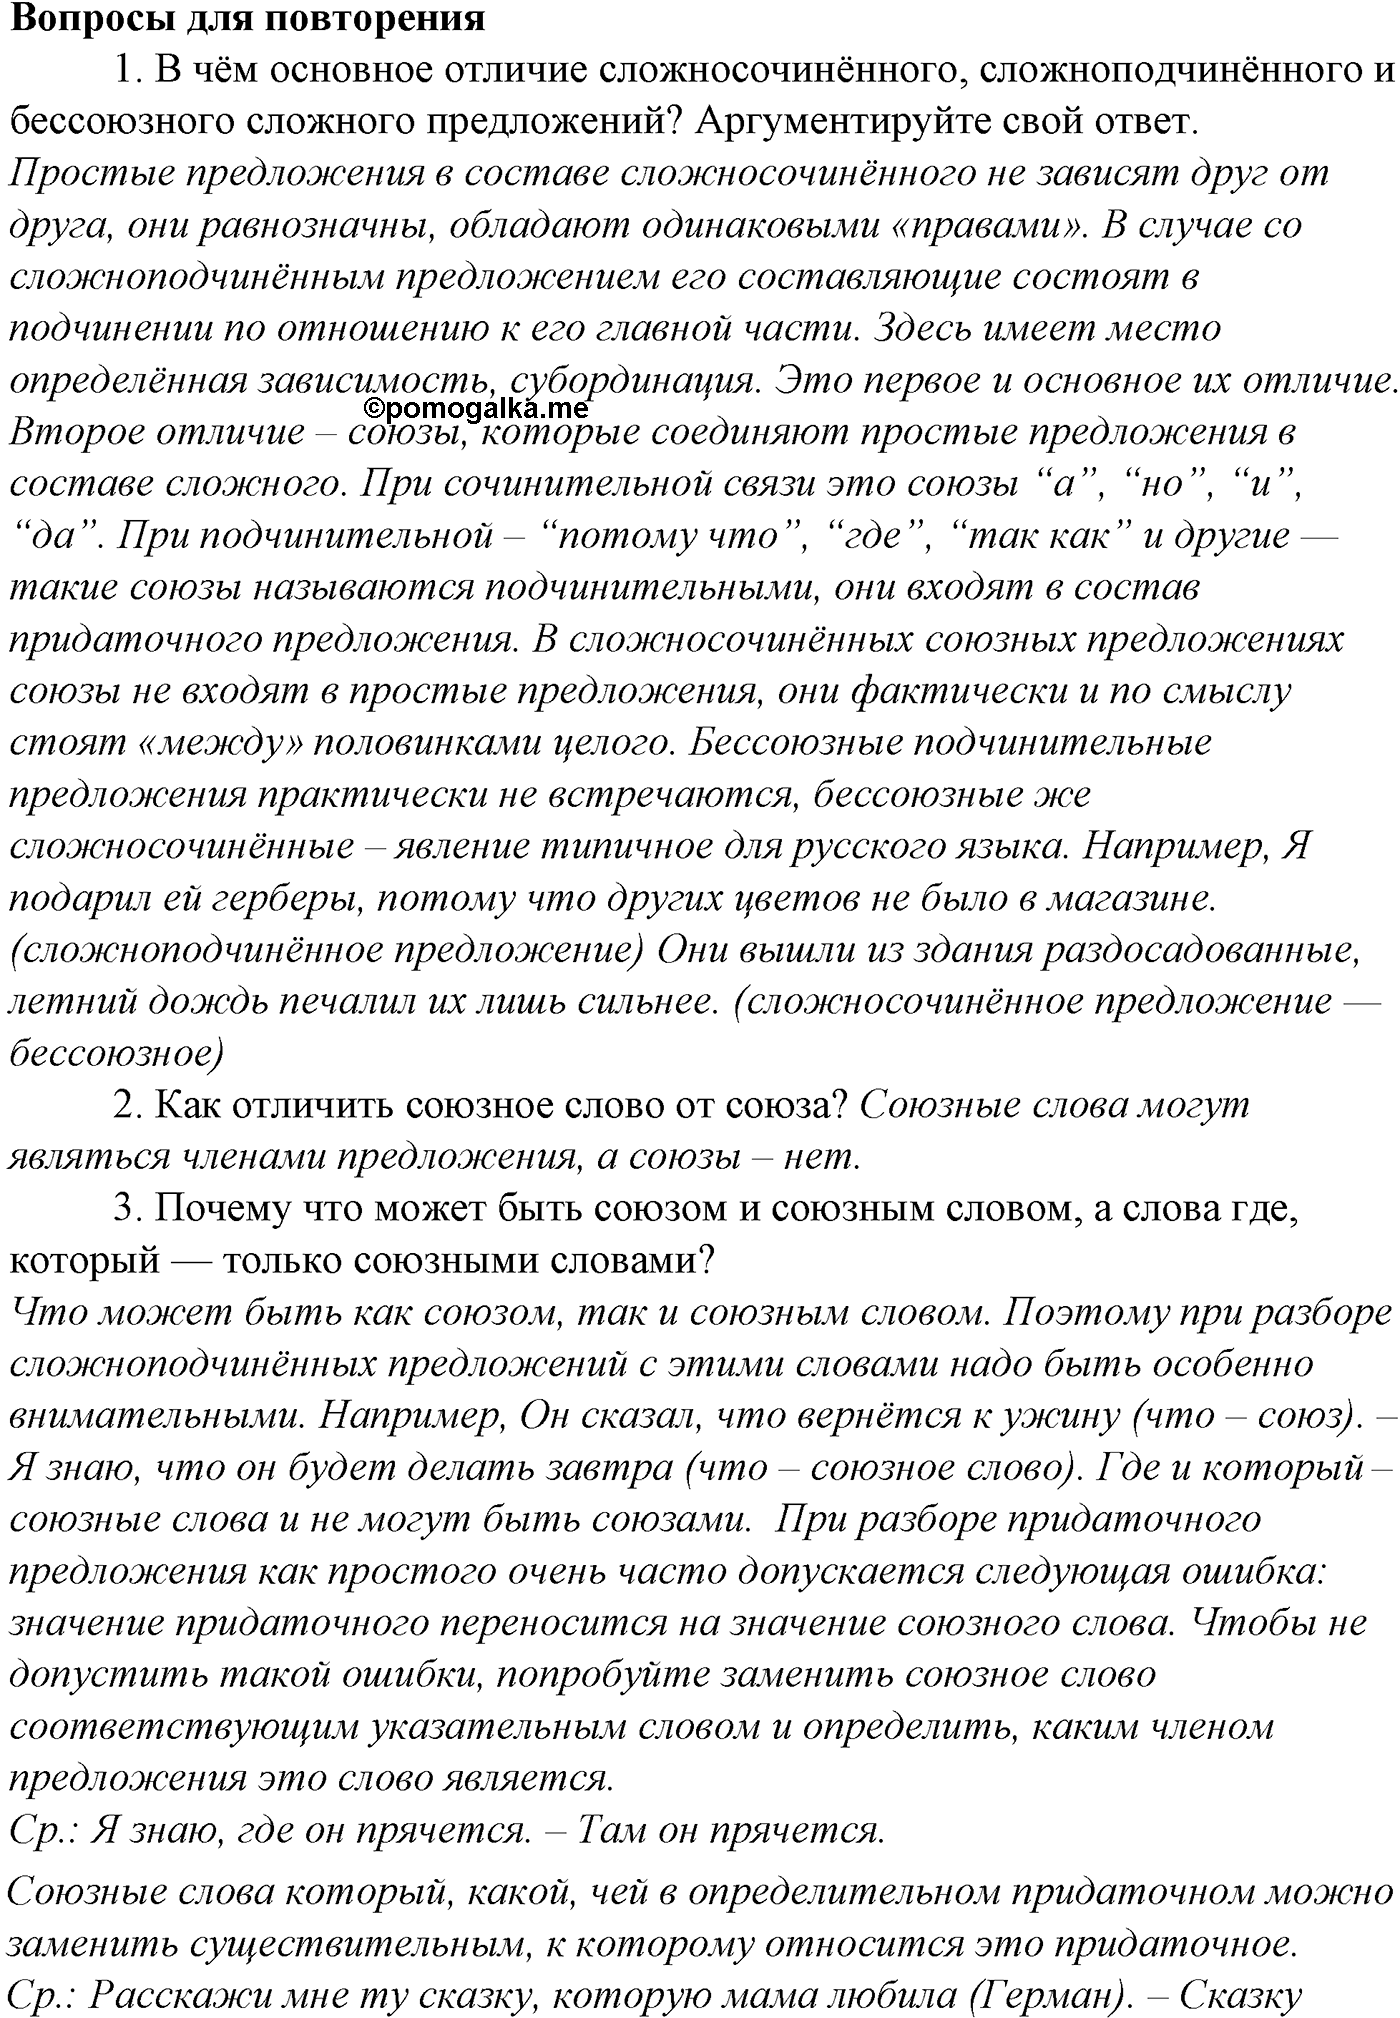 Вопросы для повторения русский язык 10-11 класс Гольцова